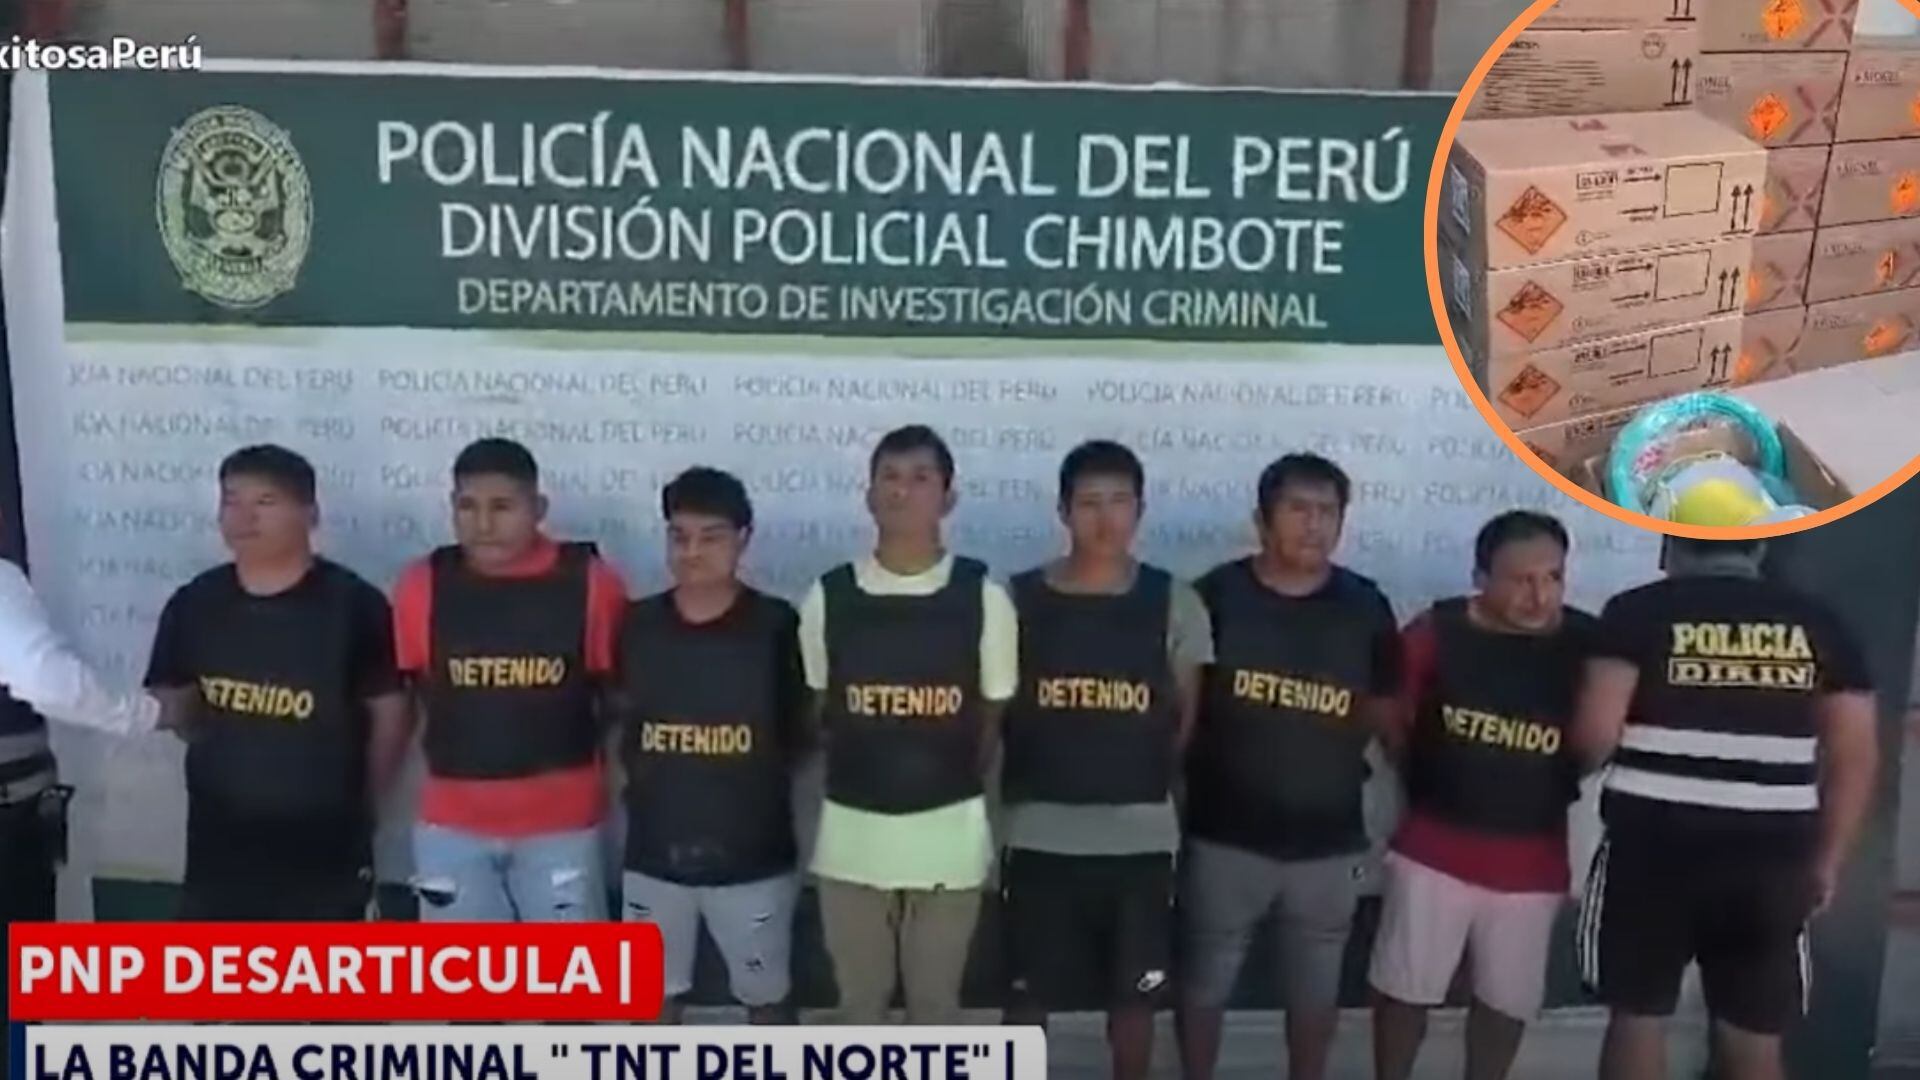 PNP - banda criminal - Chimbote - Peru